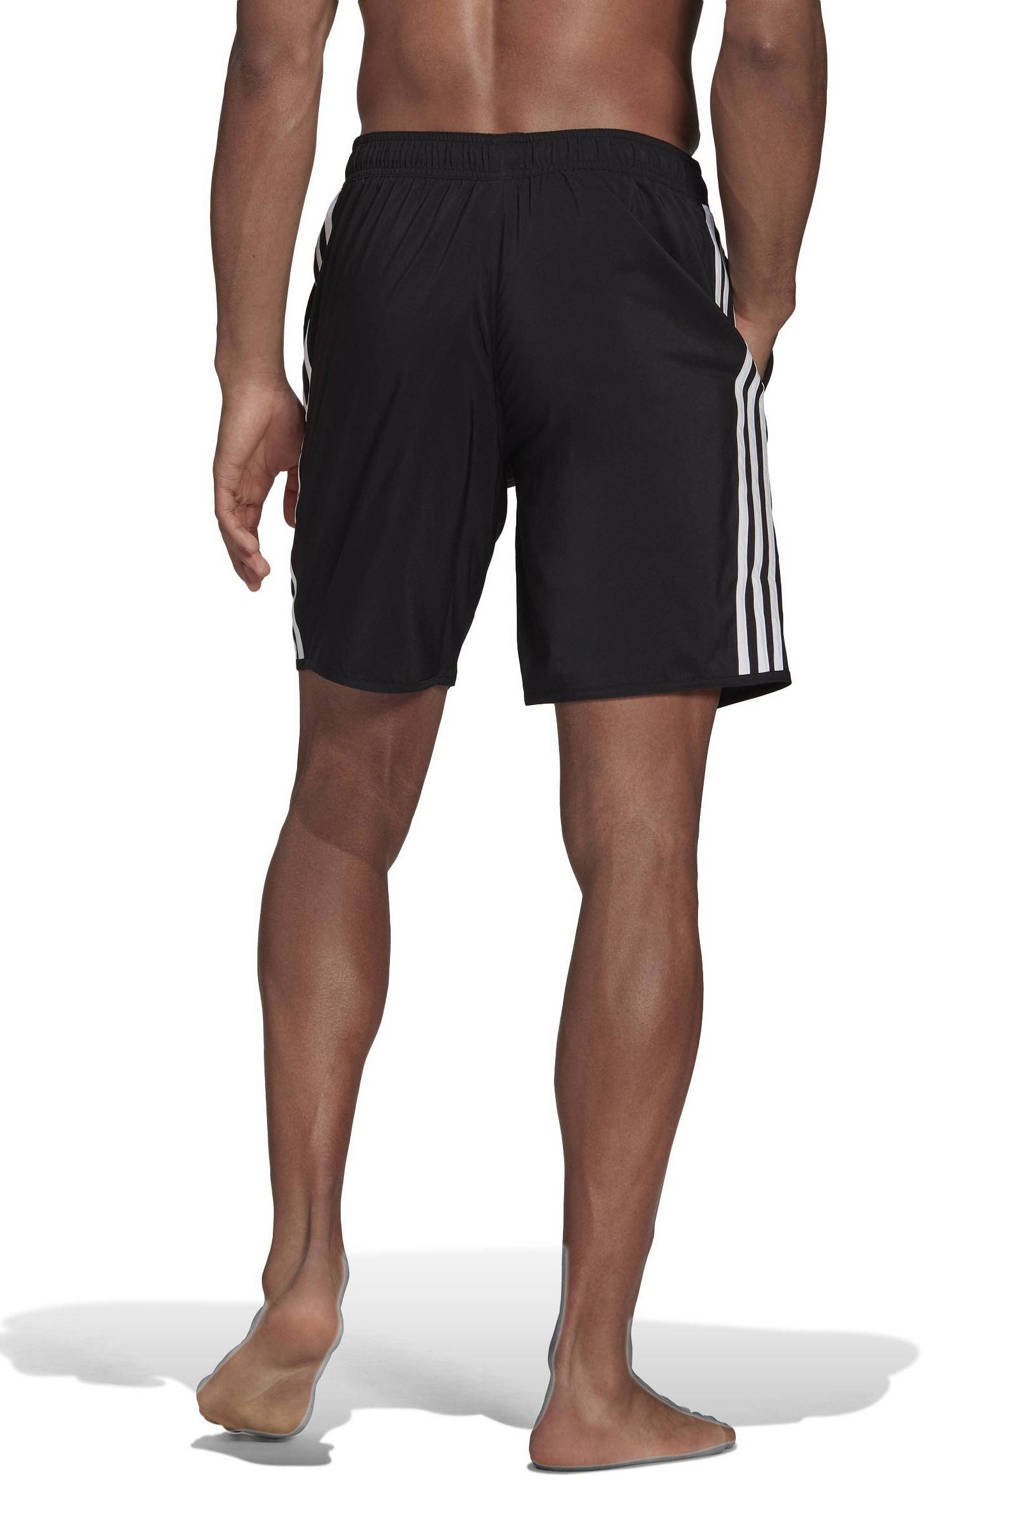 adidas zwemshort zwart/wit wehkamp